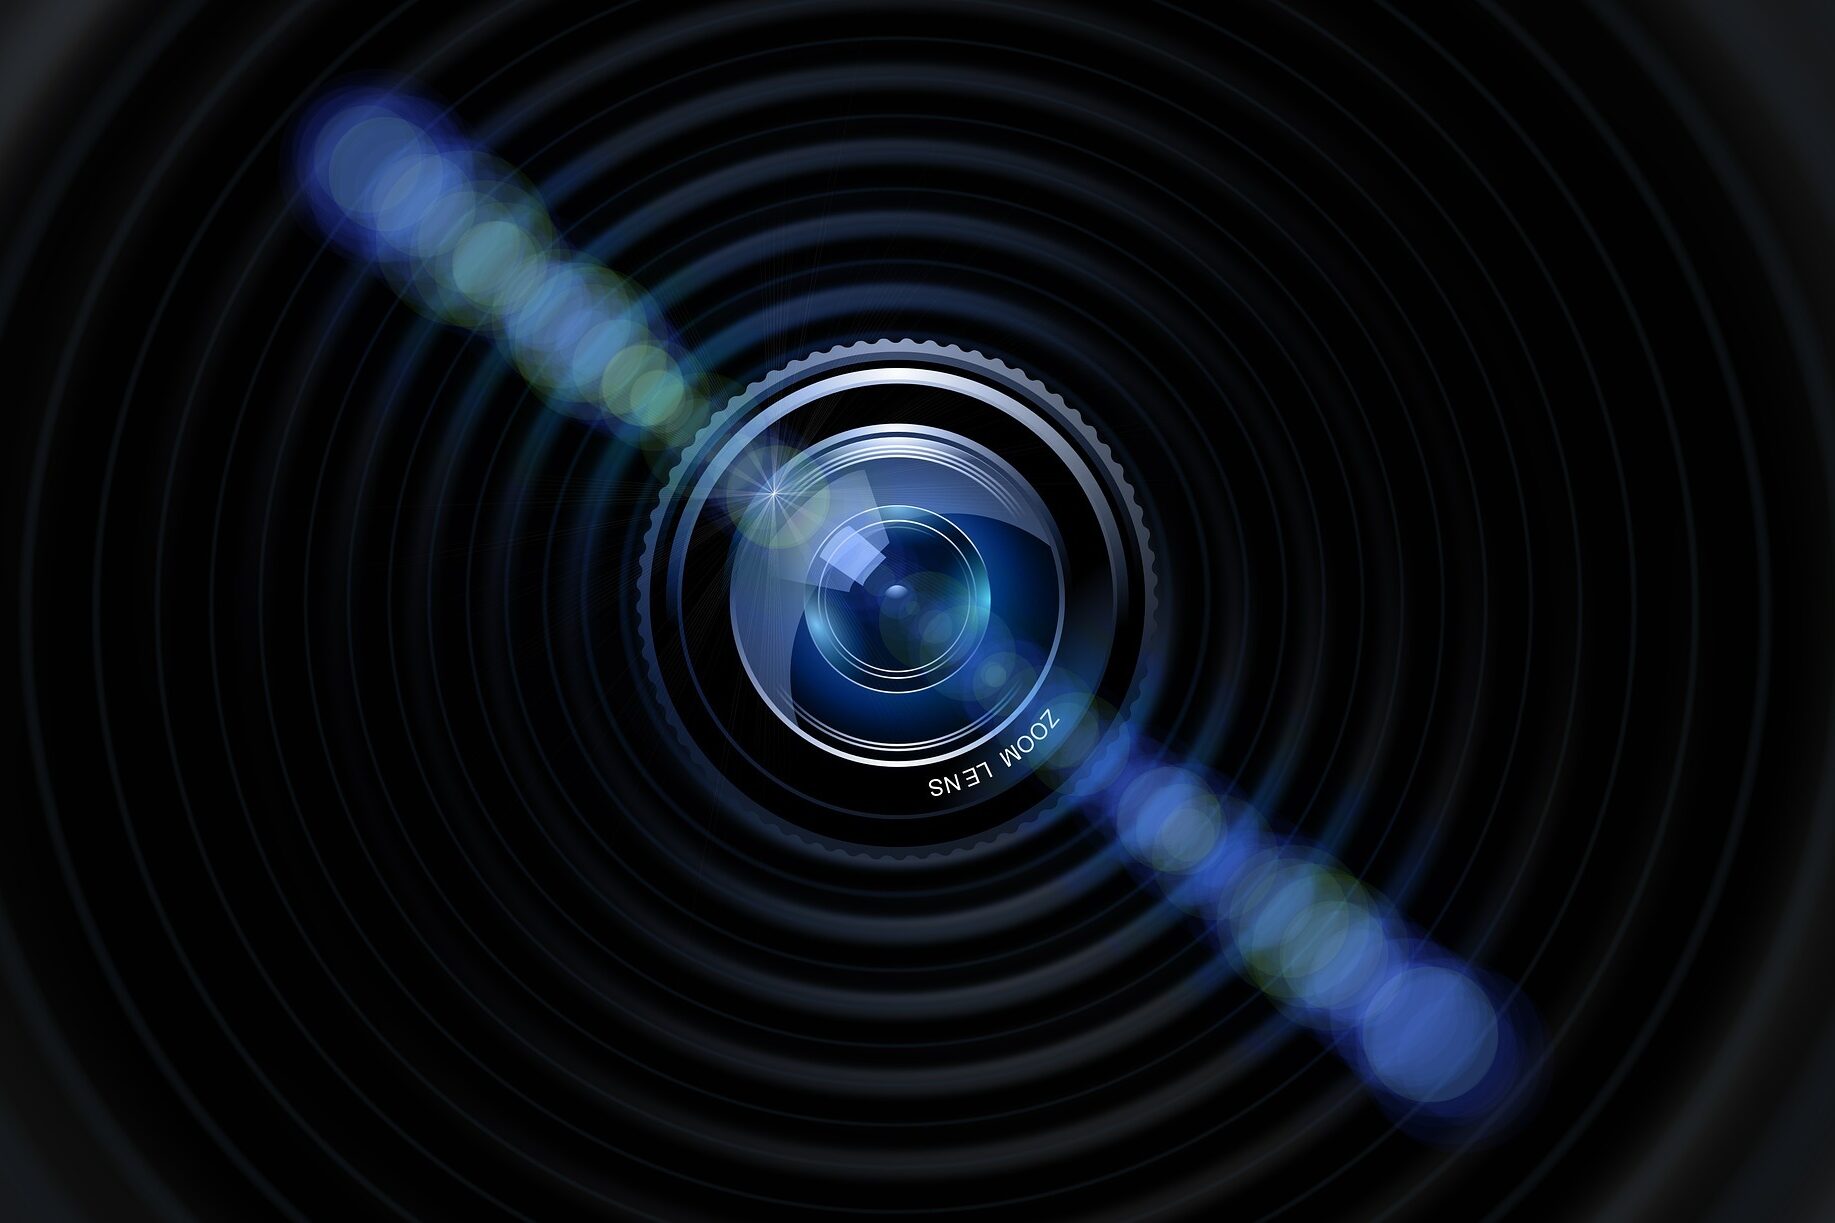 Die Abbildung des Objektivs einer Kamera